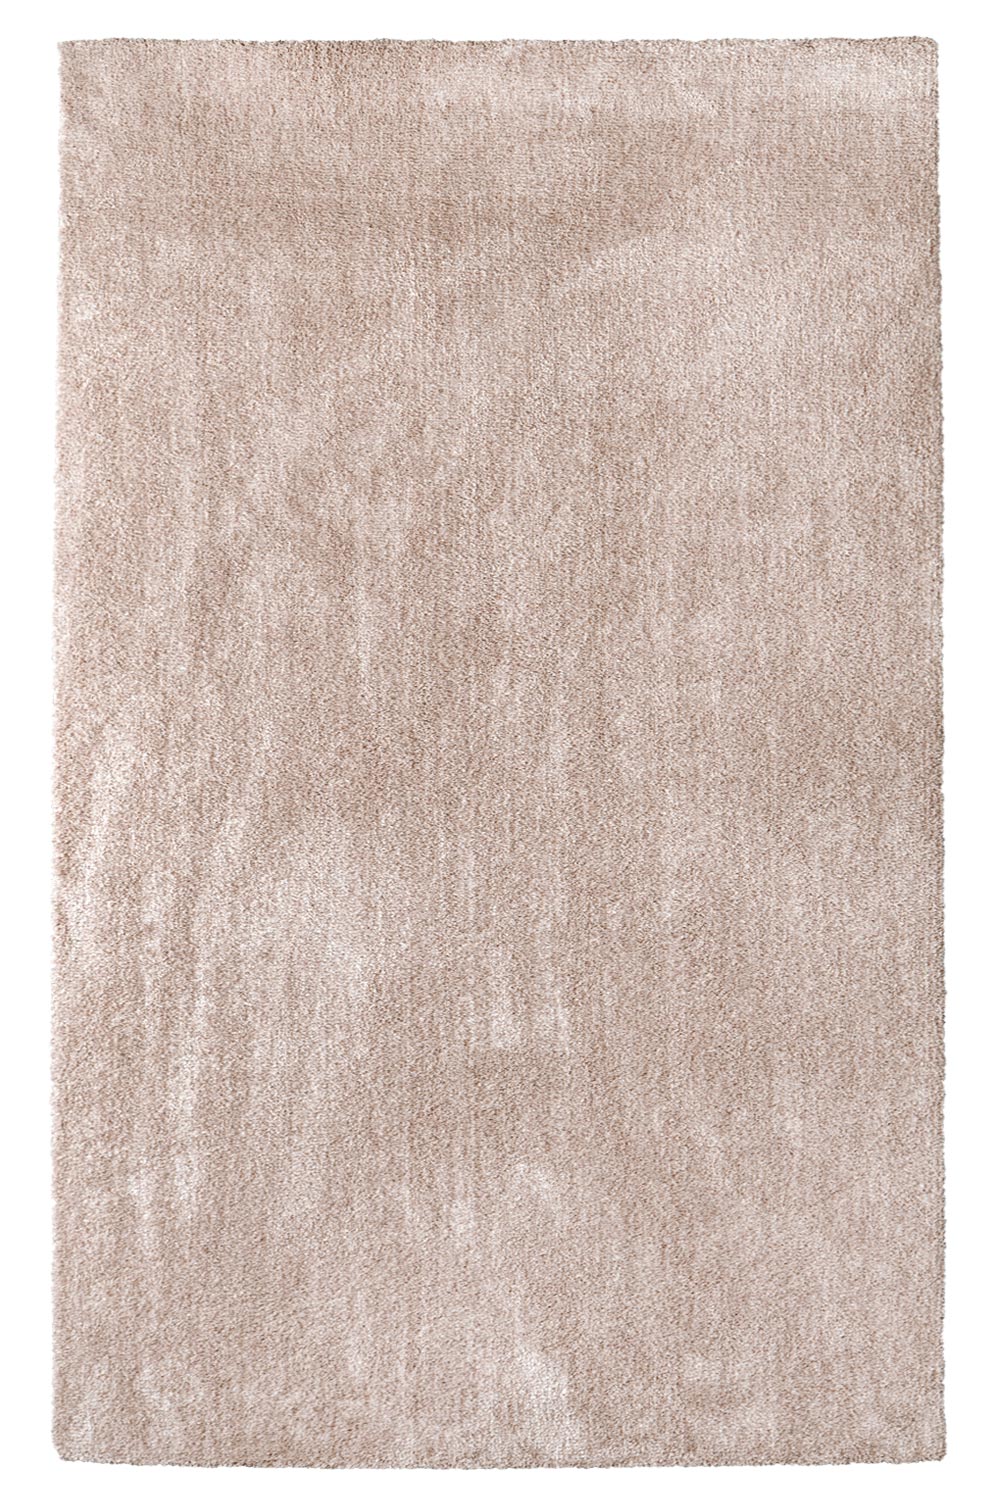 Kusový koberec Labrador 71351 026 Nude Mix 80x150 cm